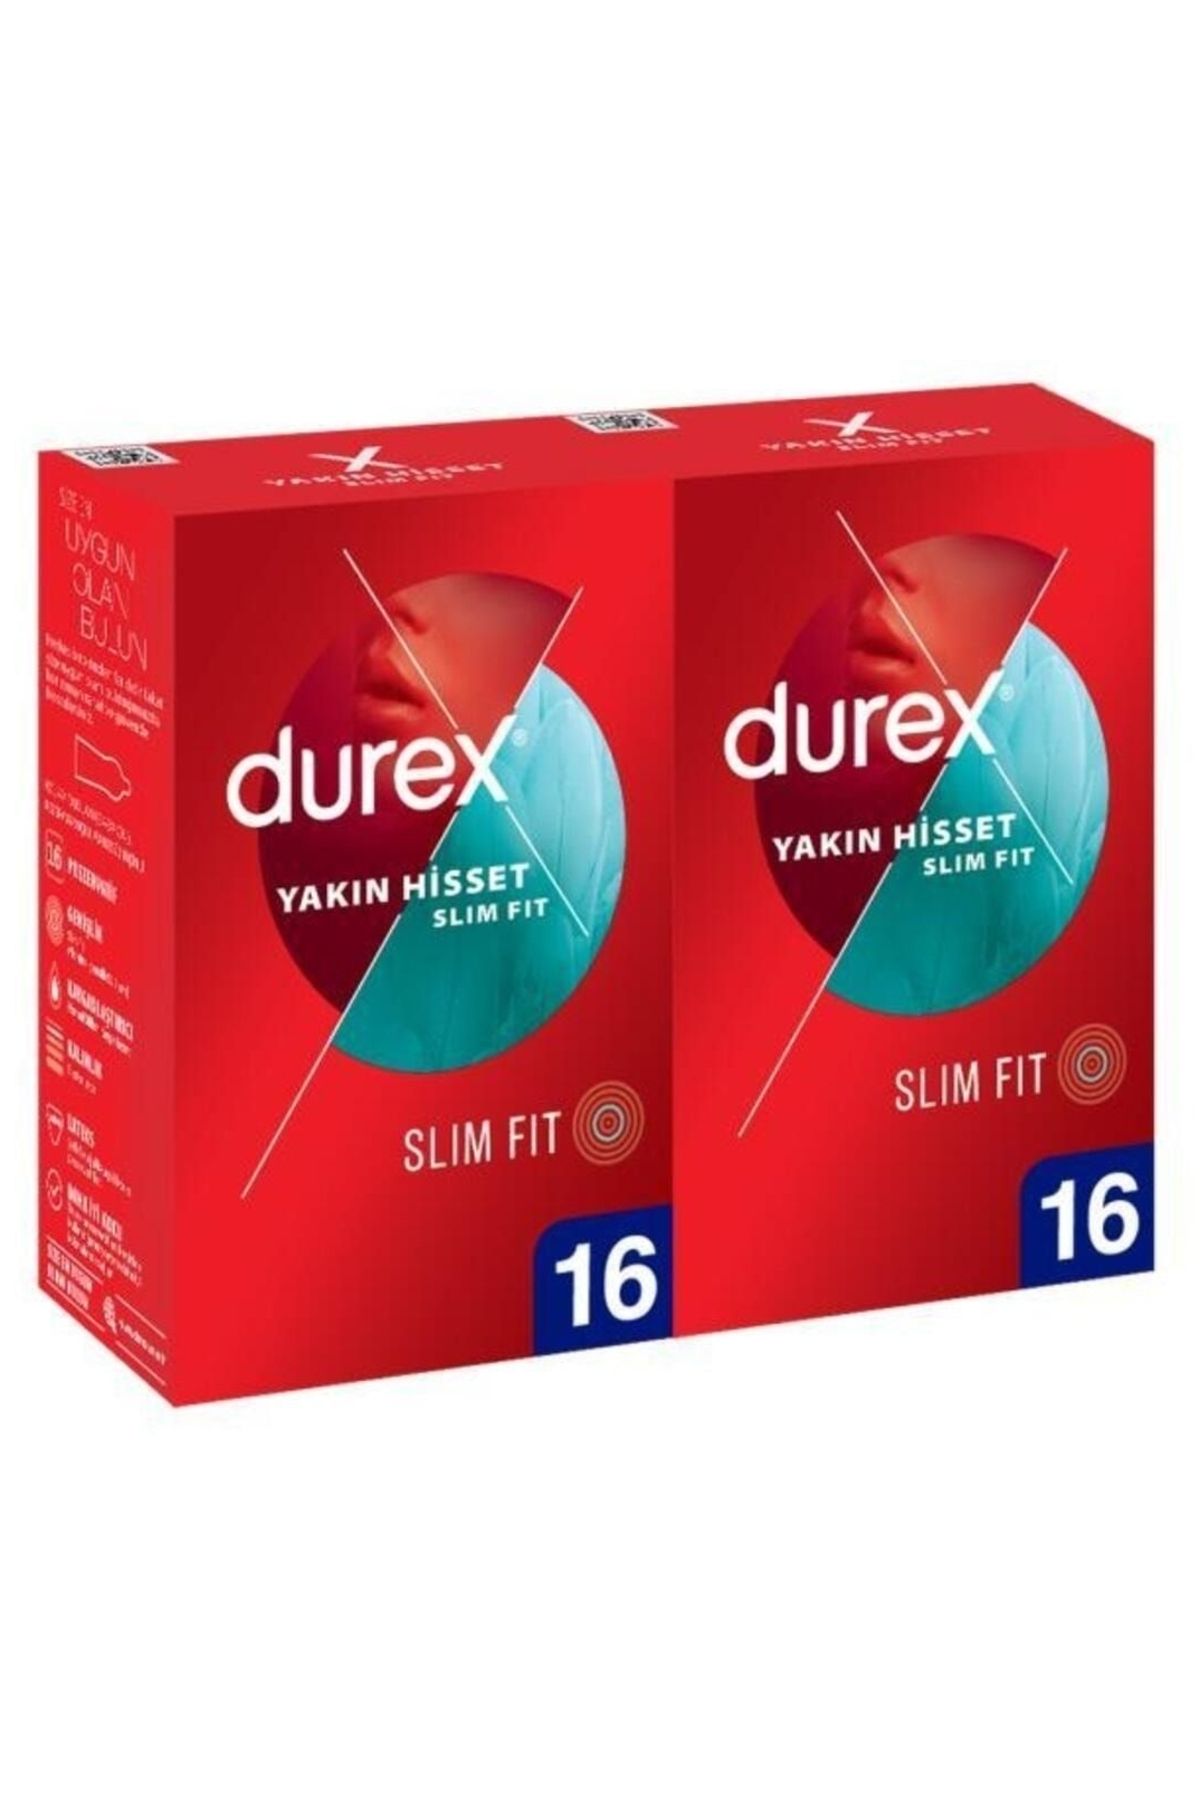 Durex Yakın Hisset Slim Fit Ince Prezervatif 16 Lı X 2 Adet